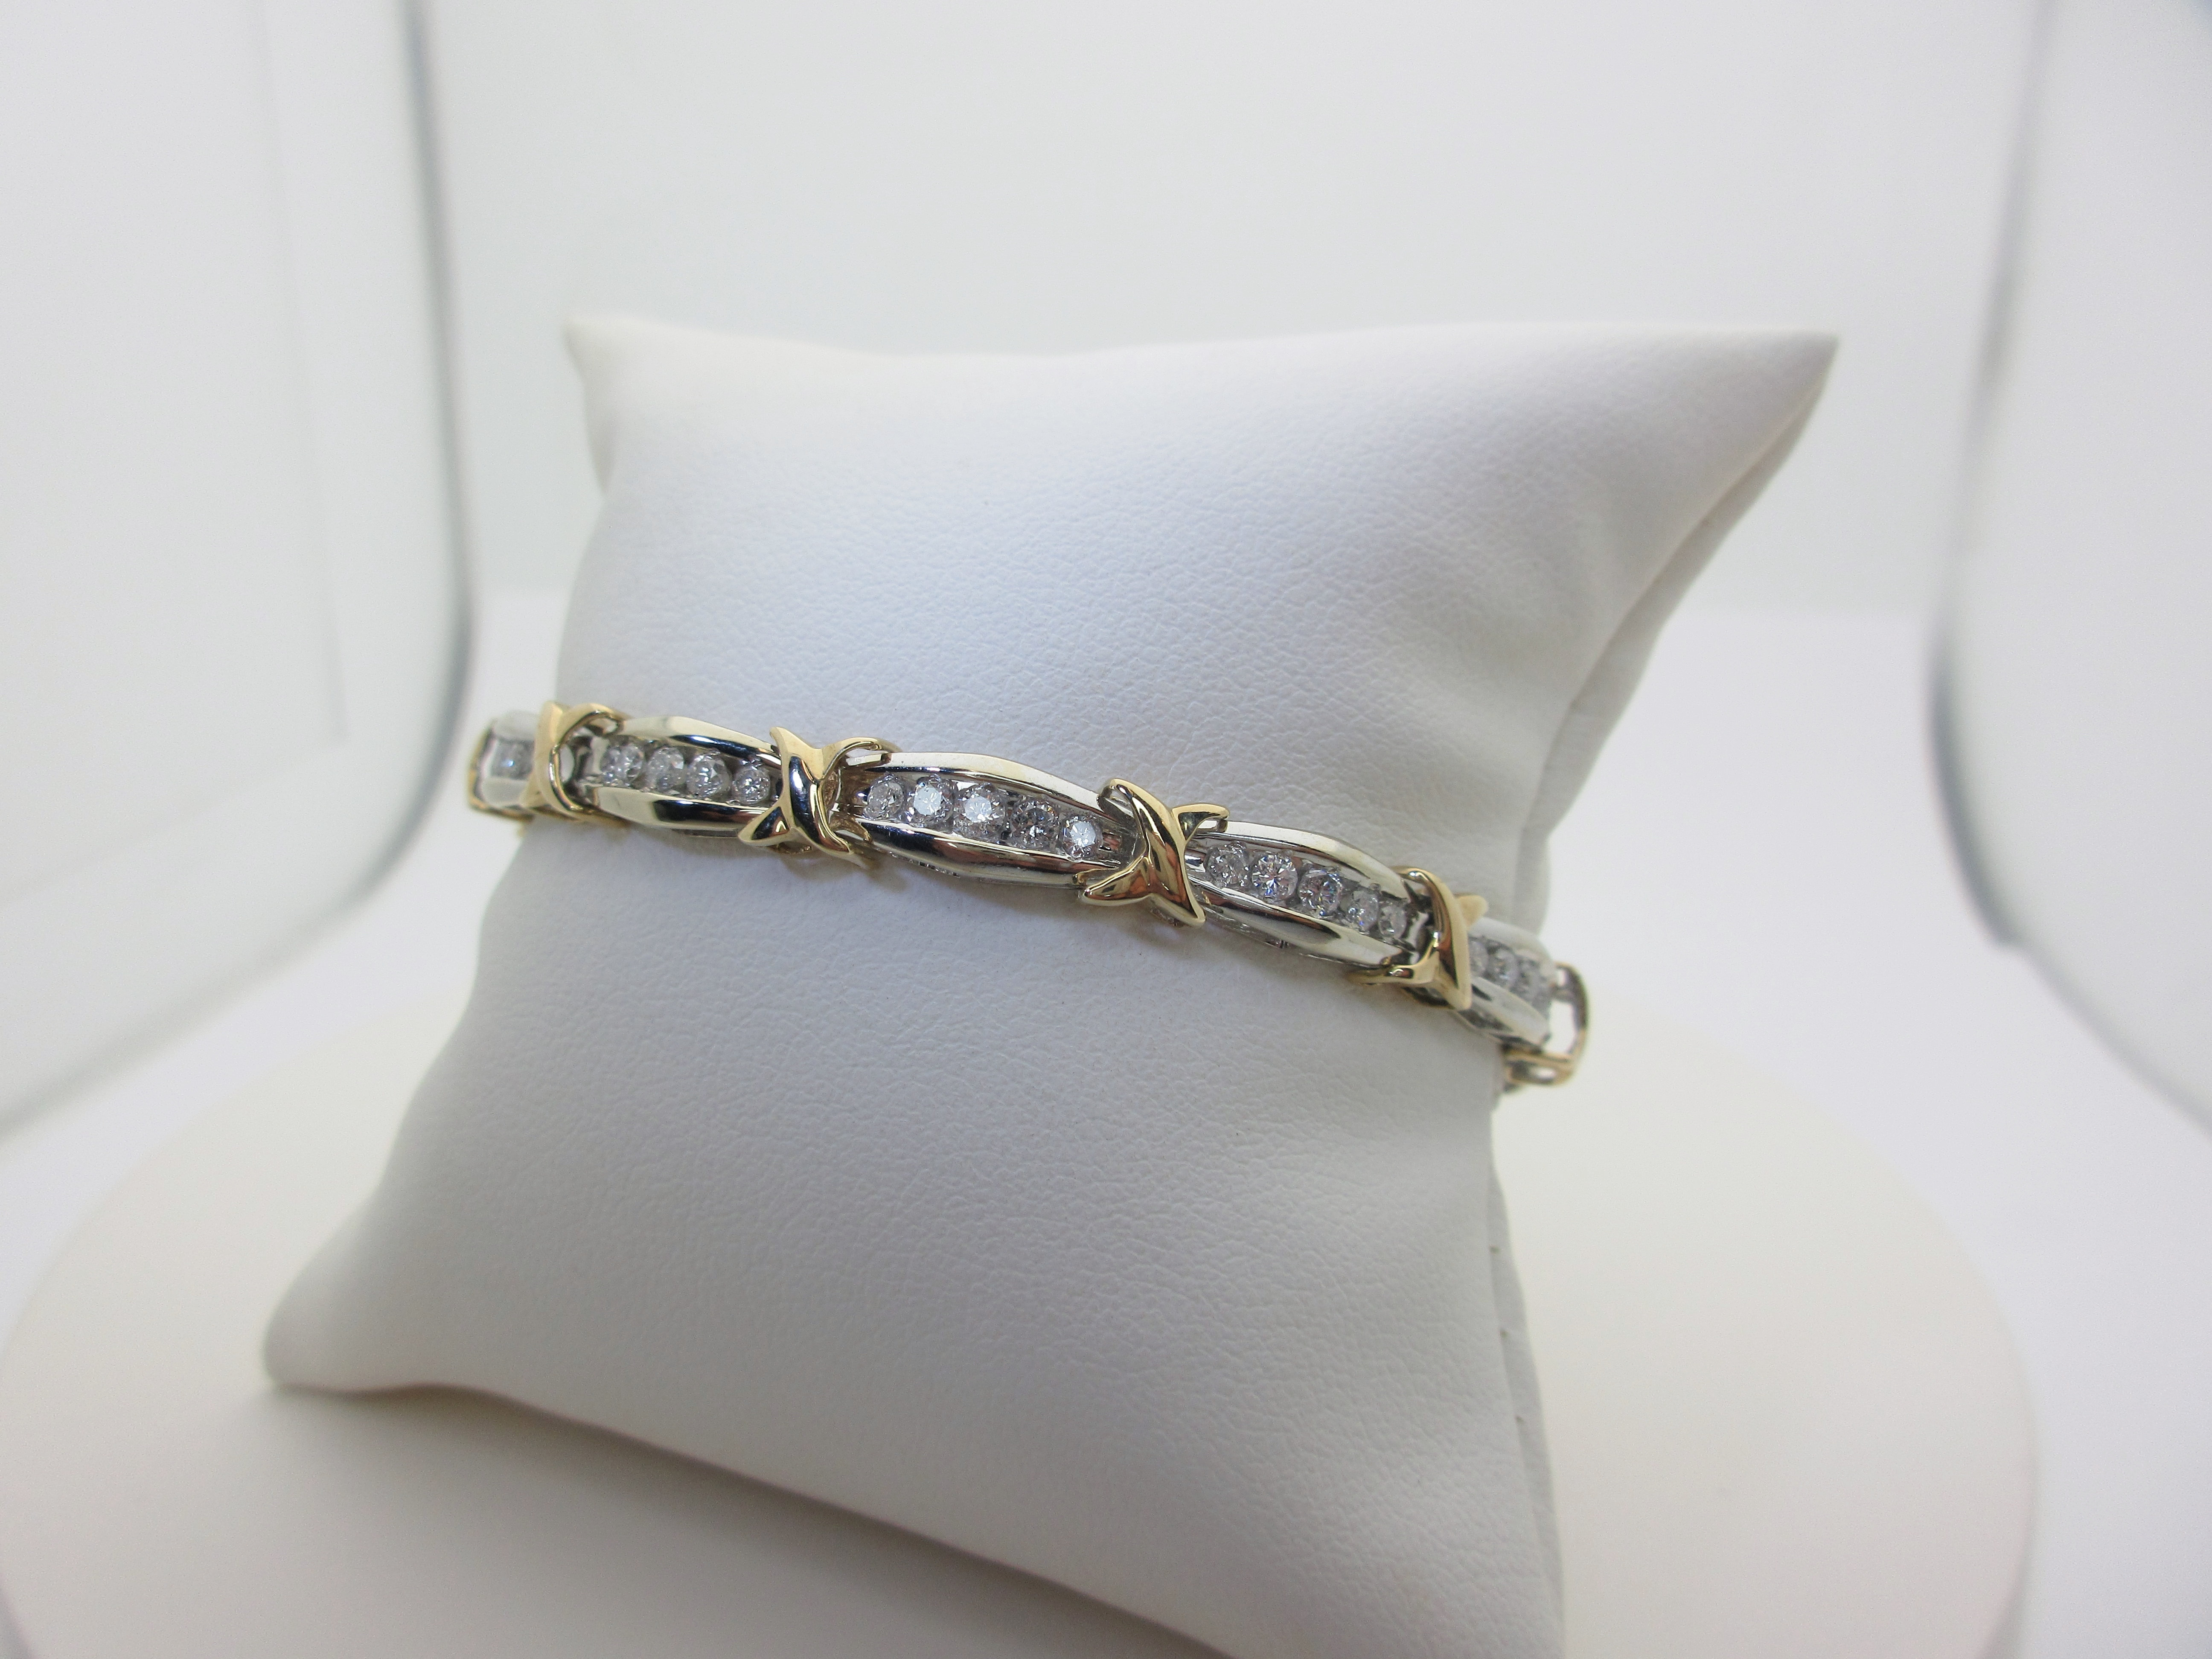 3.02 ct Ladies Round Cut Diamond Tennis Bracelet in 14 kt White Gold | eBay